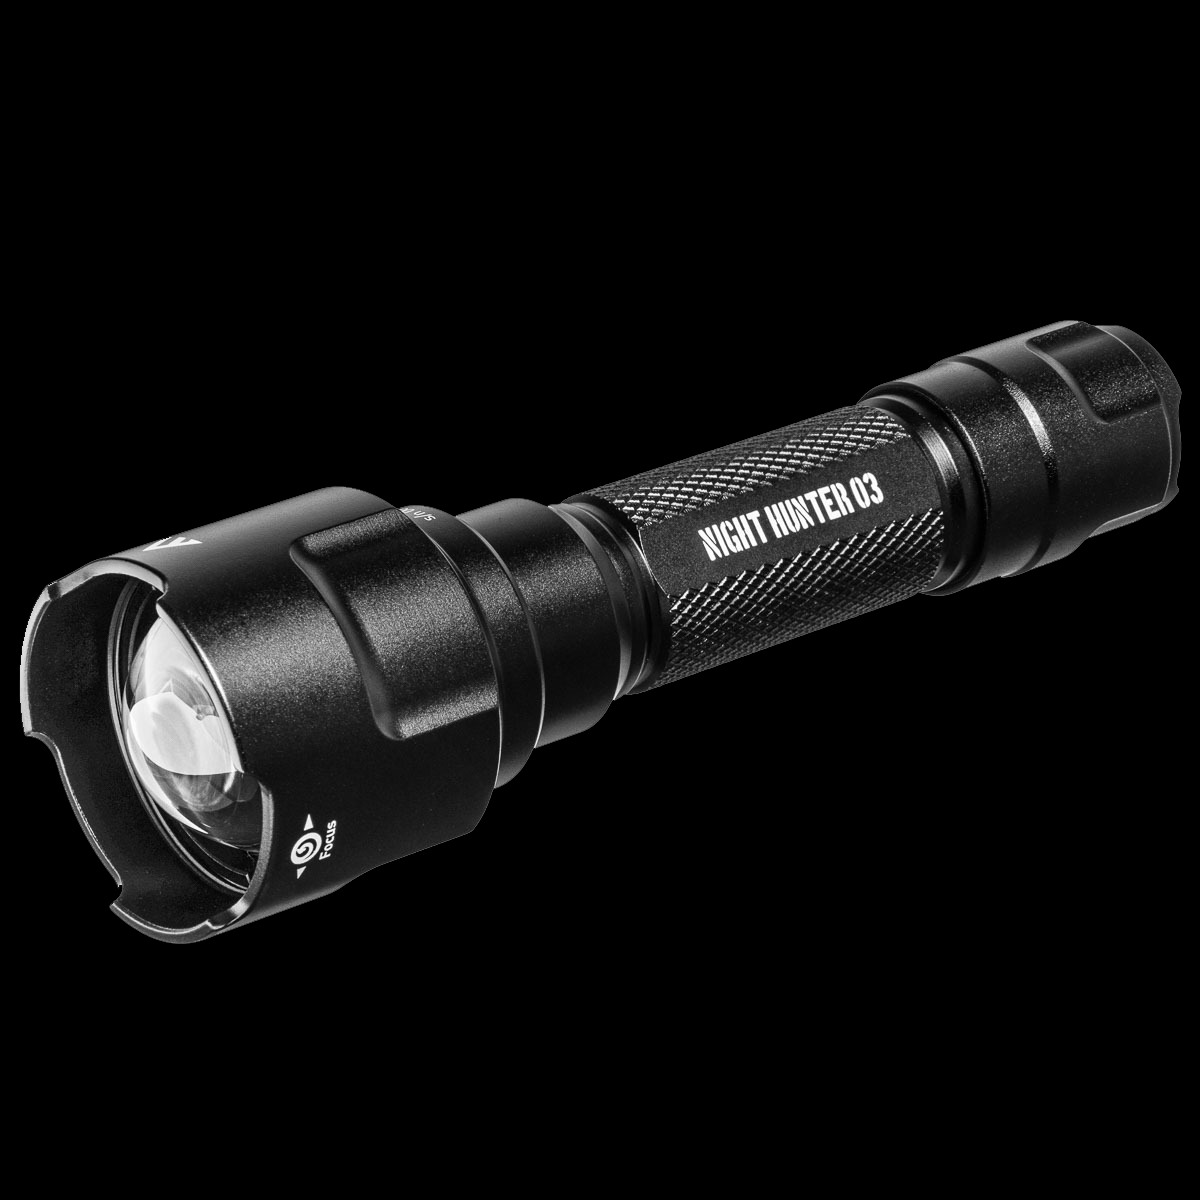 Taktische Taschenlampe mit Fokus, 1150lm, NIGHT HUNTER 03